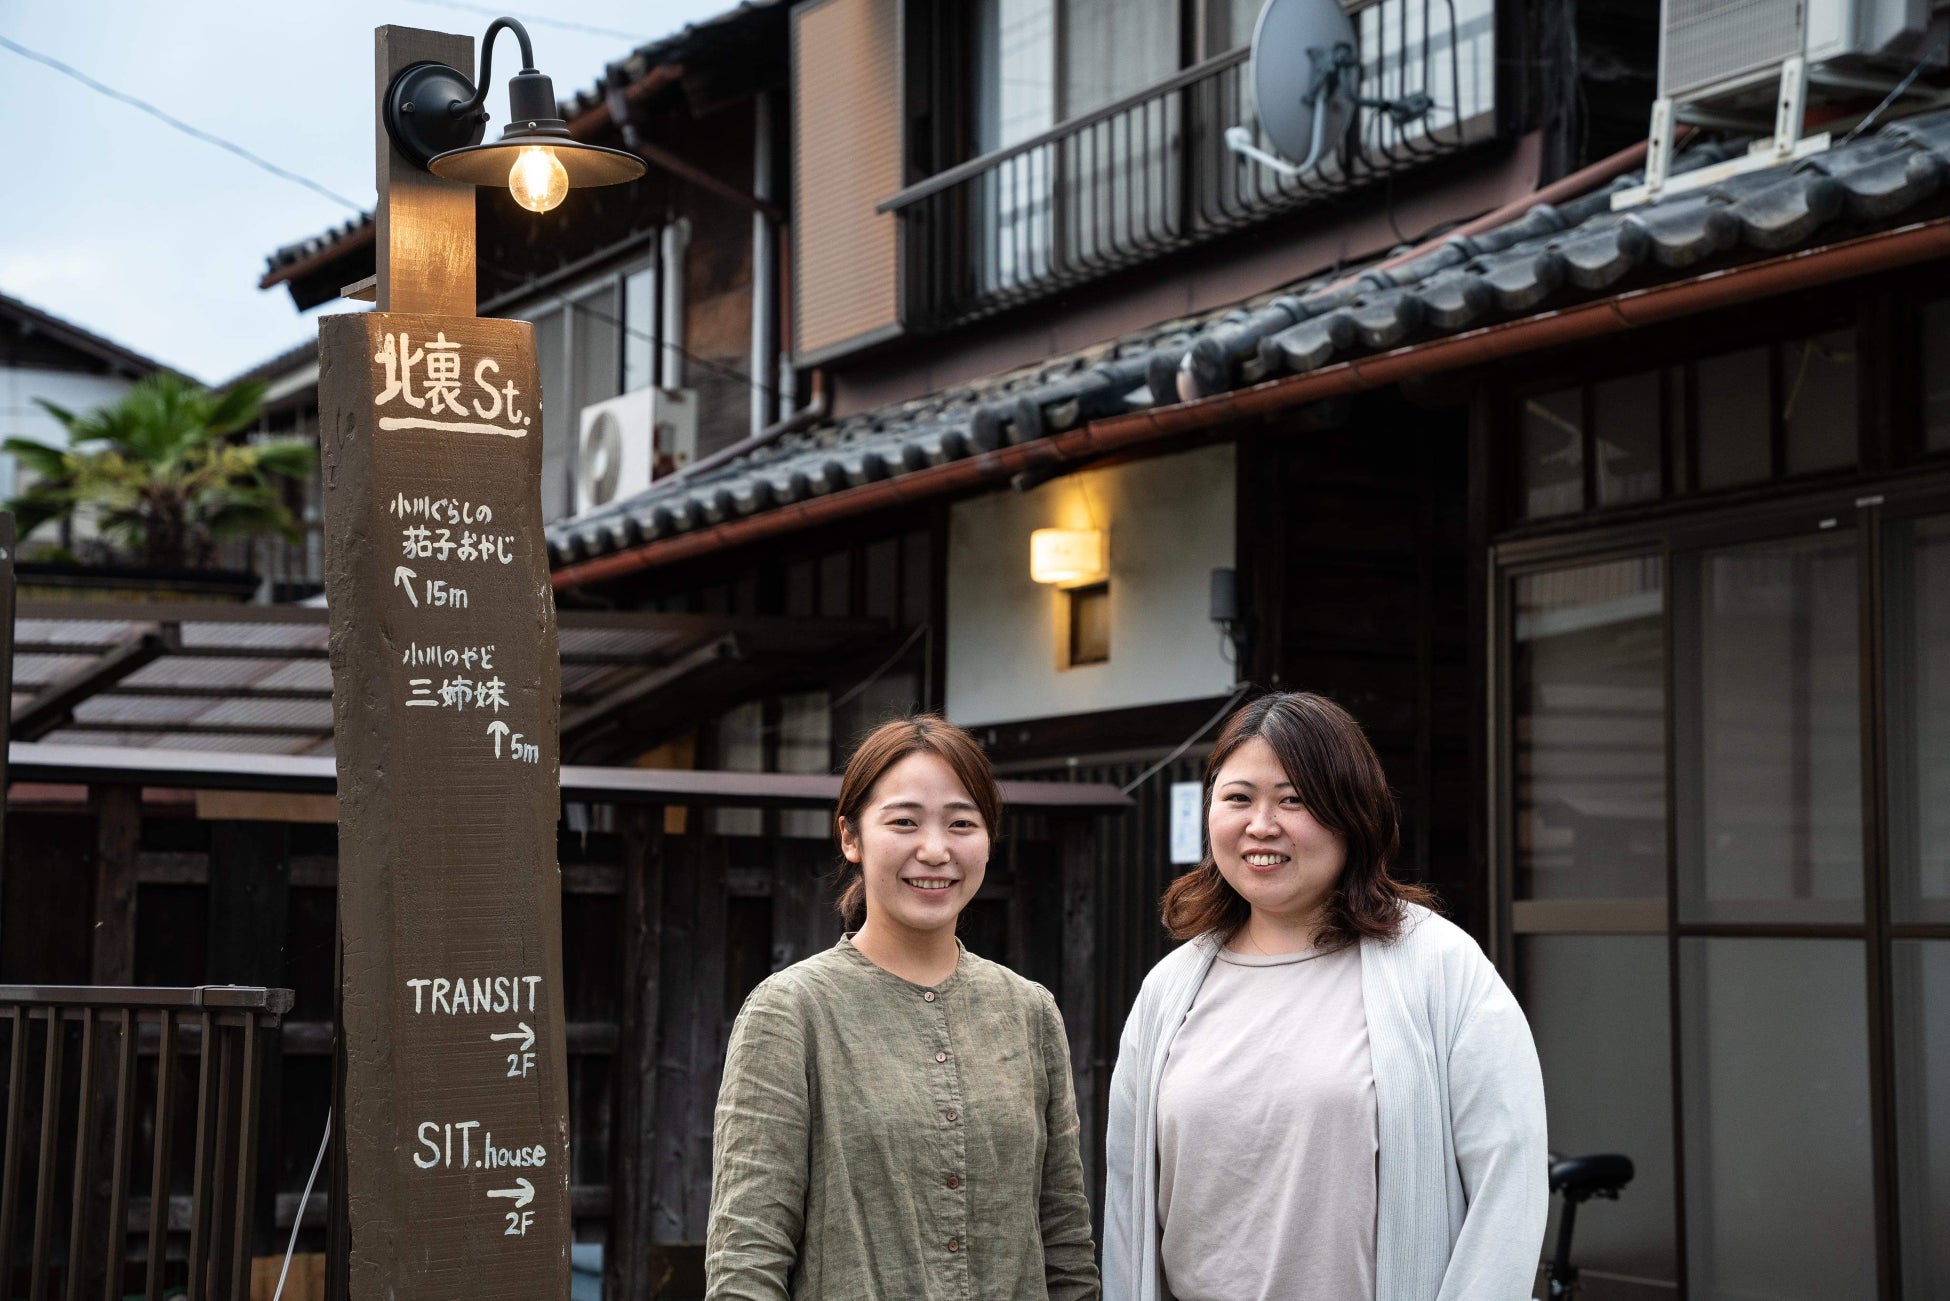 まち歩き・拠点見学・創業起業セミナー「エリアコミュニティで起業しよう！」を埼玉県西部エリアで開催します